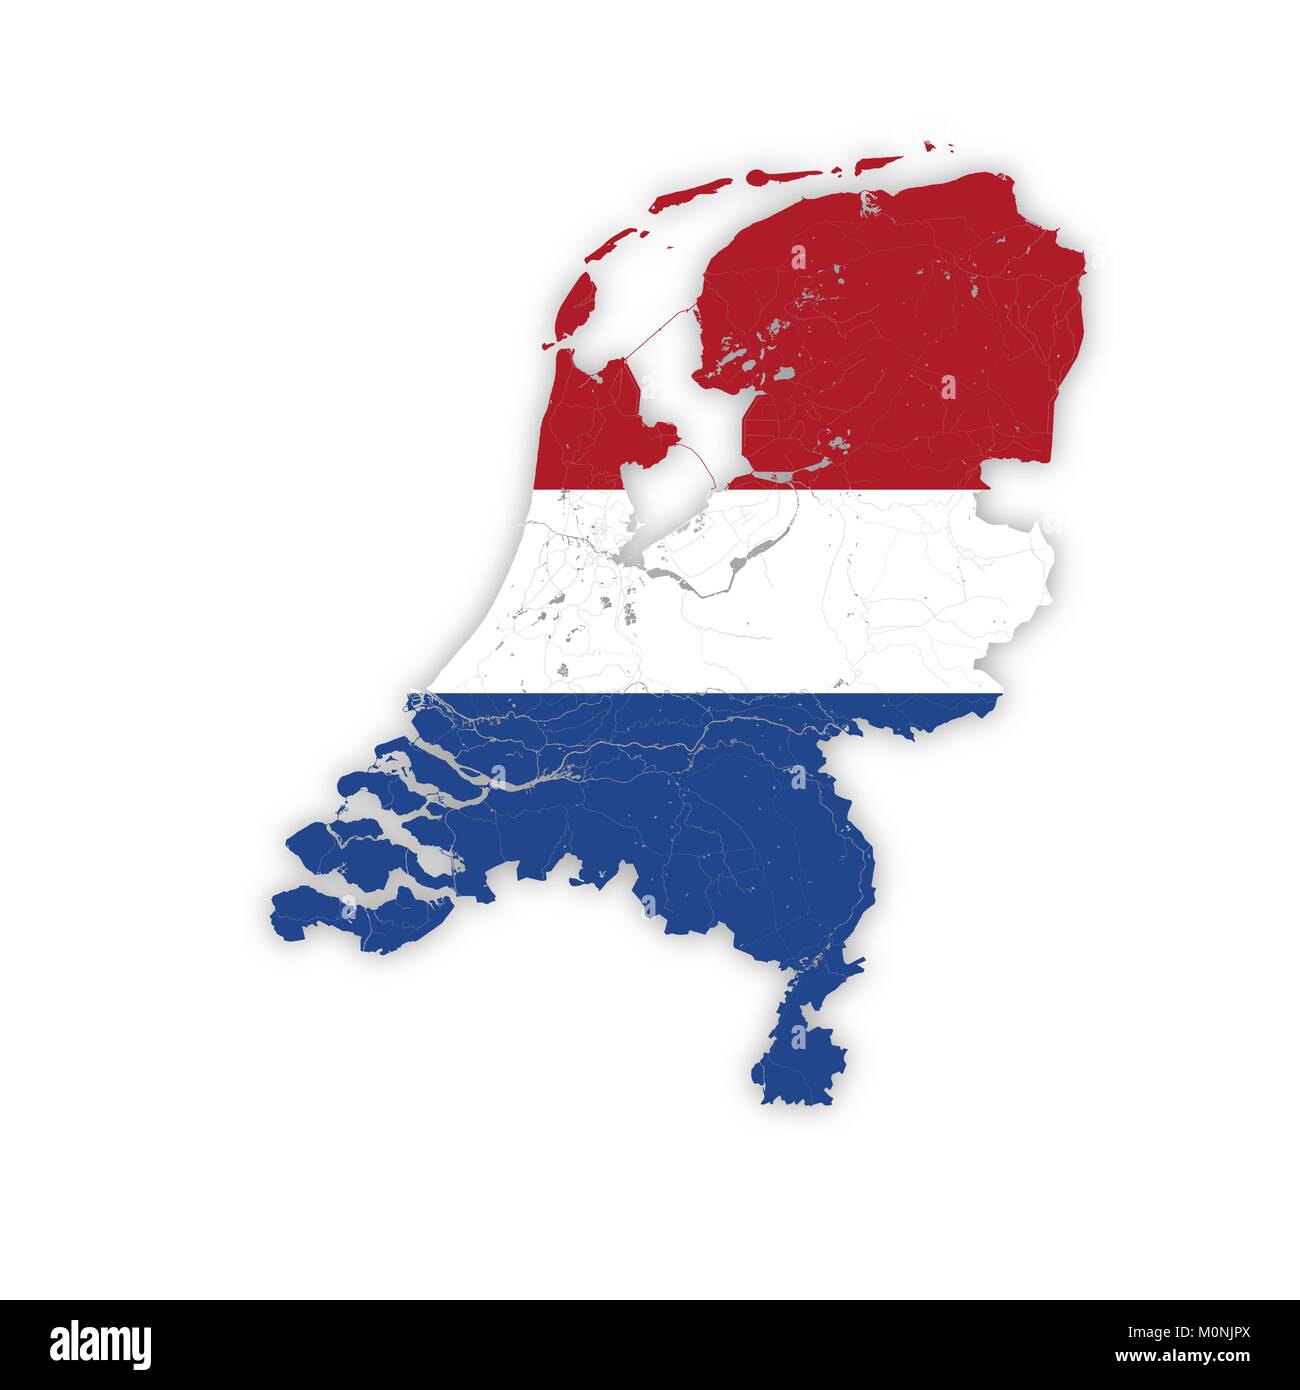 Mappa di Paesi Bassi con i fiumi e i laghi di colori delle bandiere nazionali. Si prega di guardare le mie altre immagini della serie cartografica - sono tutti molto de Illustrazione Vettoriale